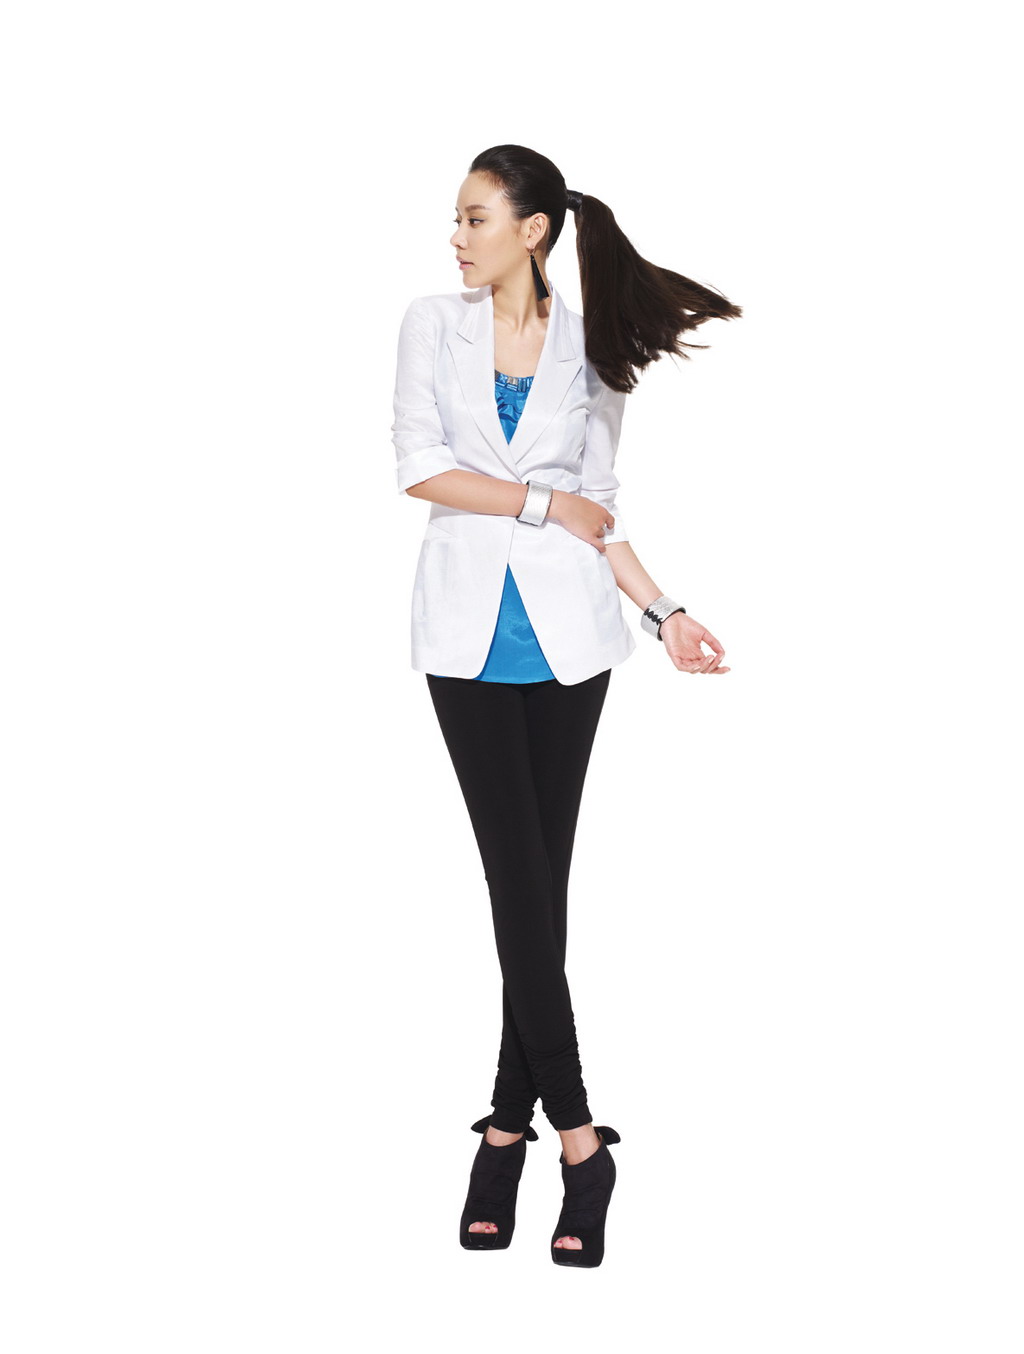 韩国女歌手金泫雅时尚写真手机壁纸_电脑主题网